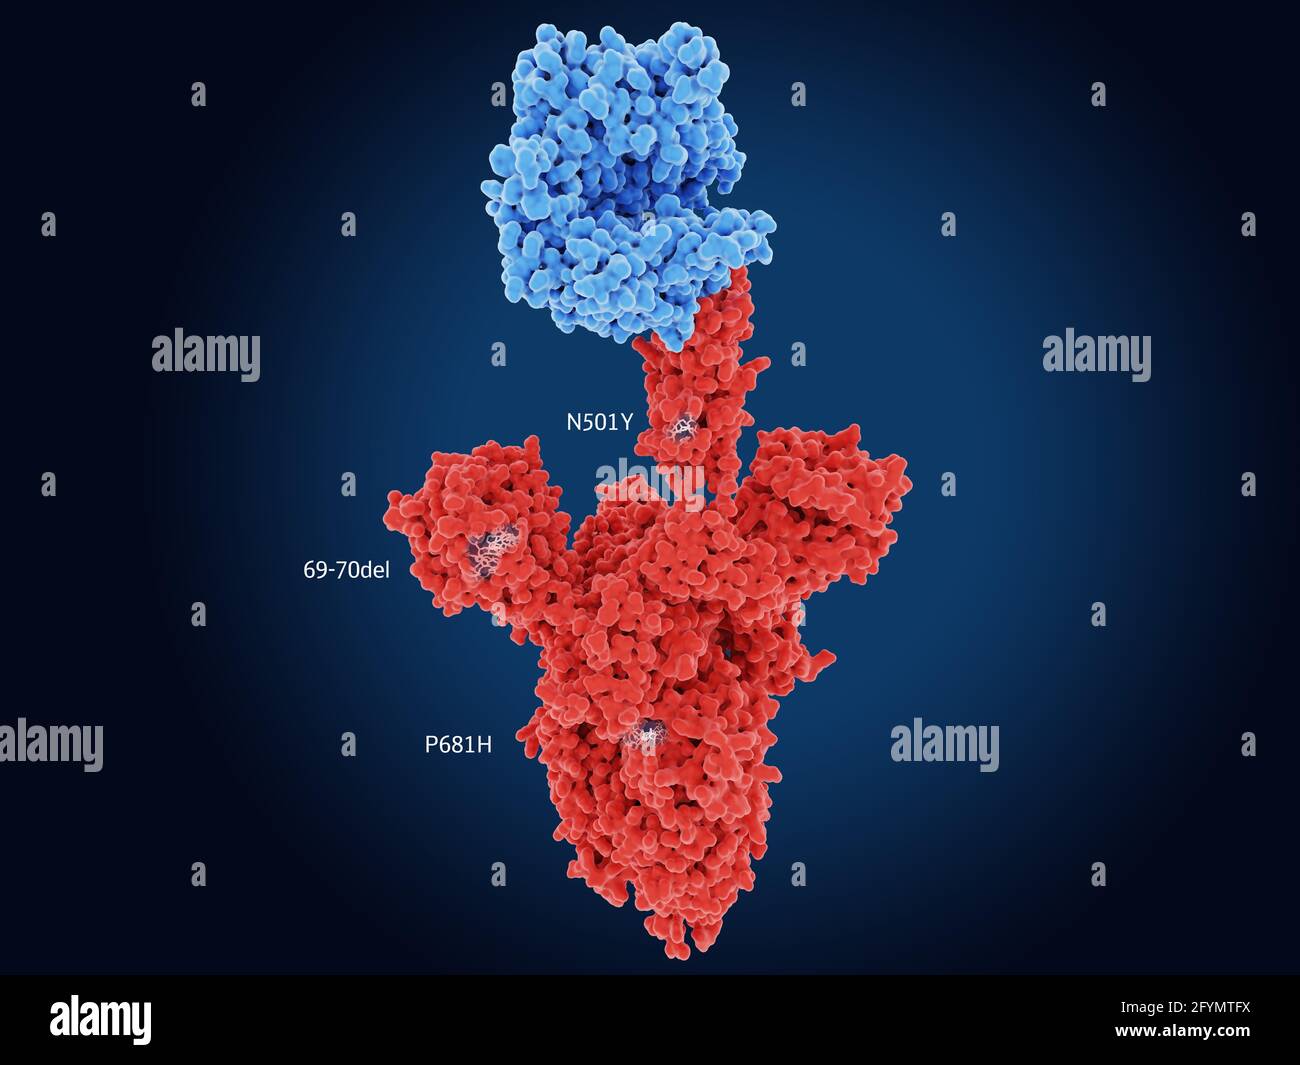 B.1.1.7 coronavirus variant spike protein, illustration Stock Photo